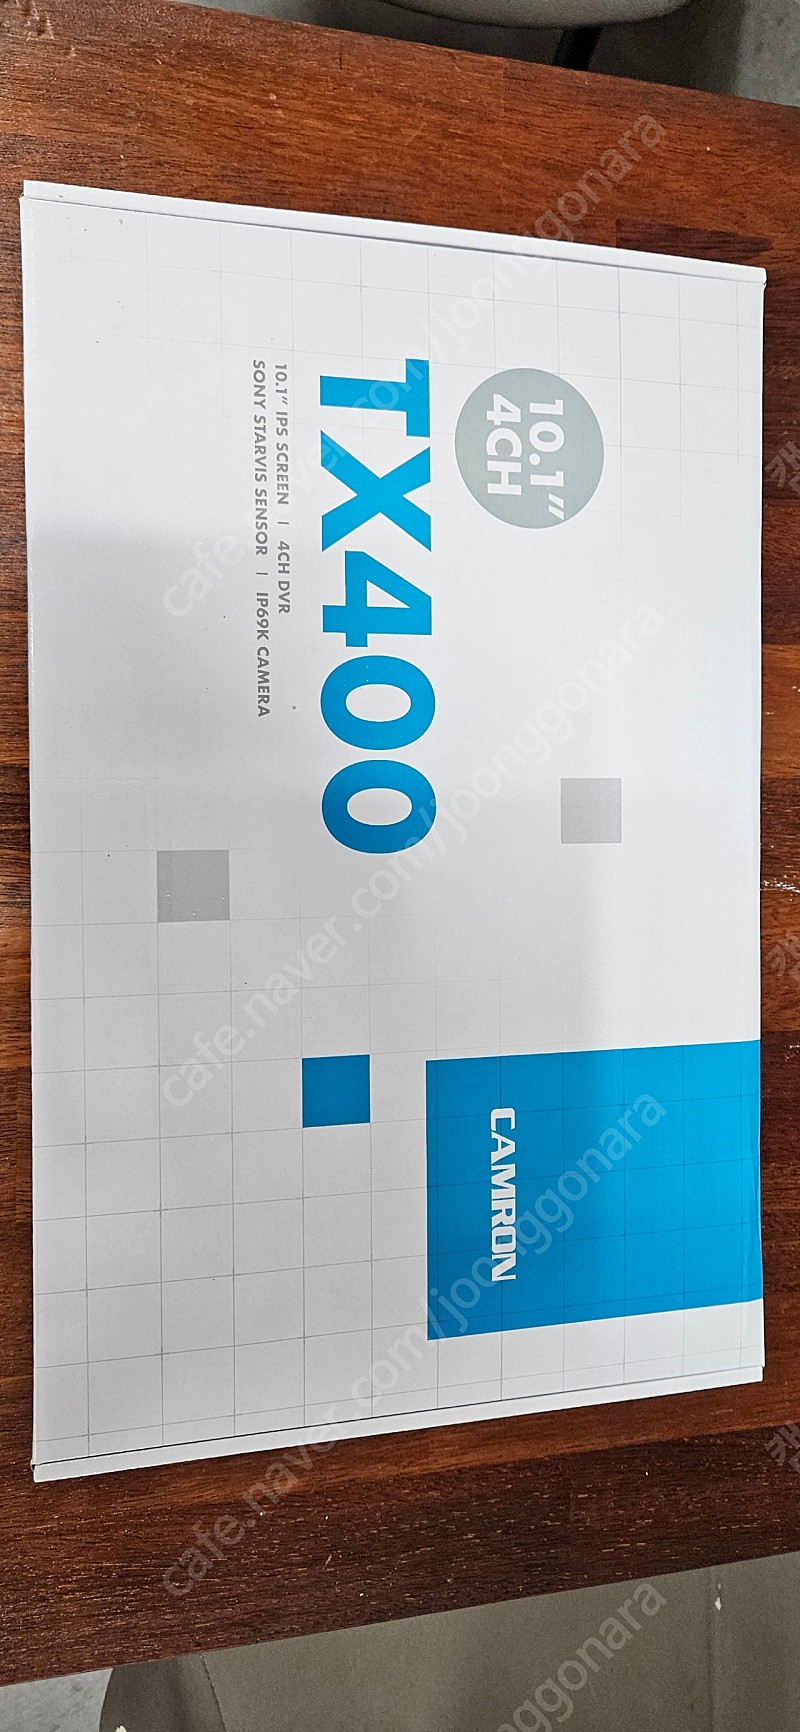 캠론4채널 tx400블랙박스 화물차블랙박스,캠핑카블랙박스